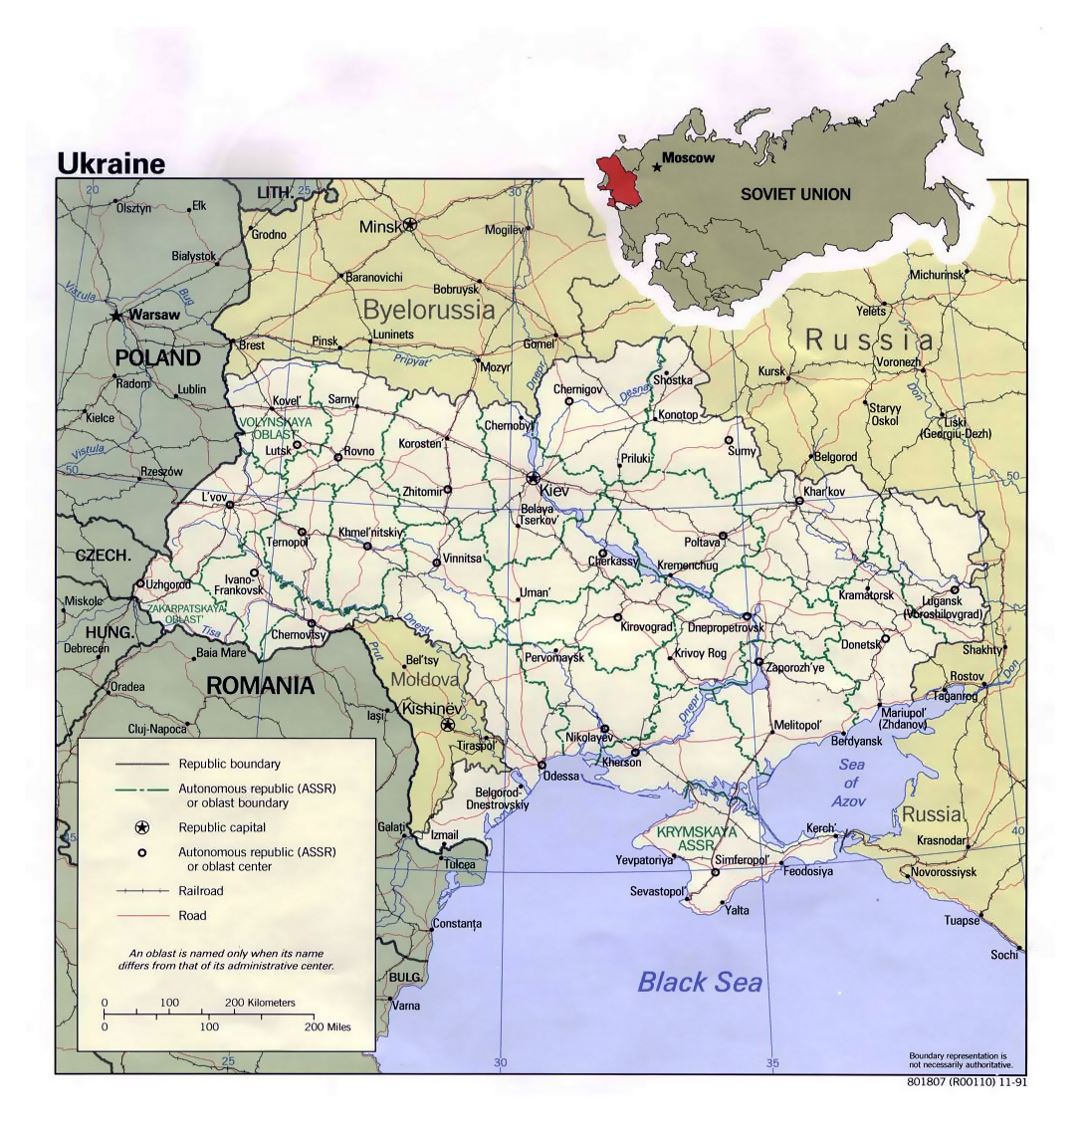 Detallado mapa político y administrativo de Ucrania con carreteras, ferrocarriles y principales ciudades - 1991